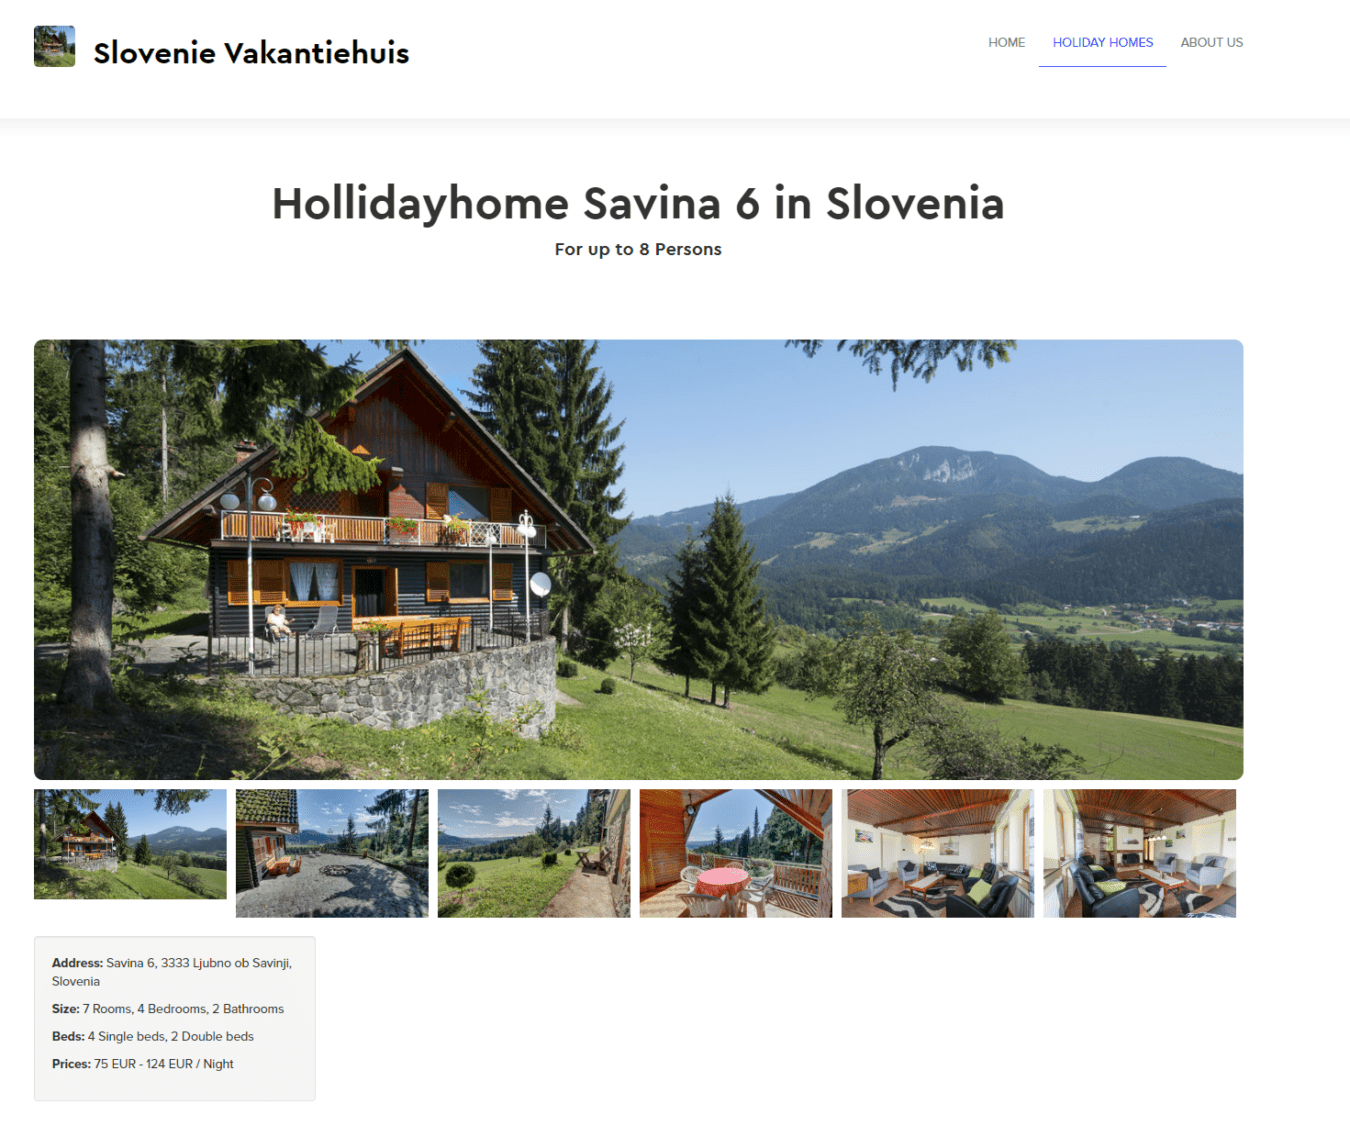 Holidayhome Slovenia-Savina-6-in-Slovenia